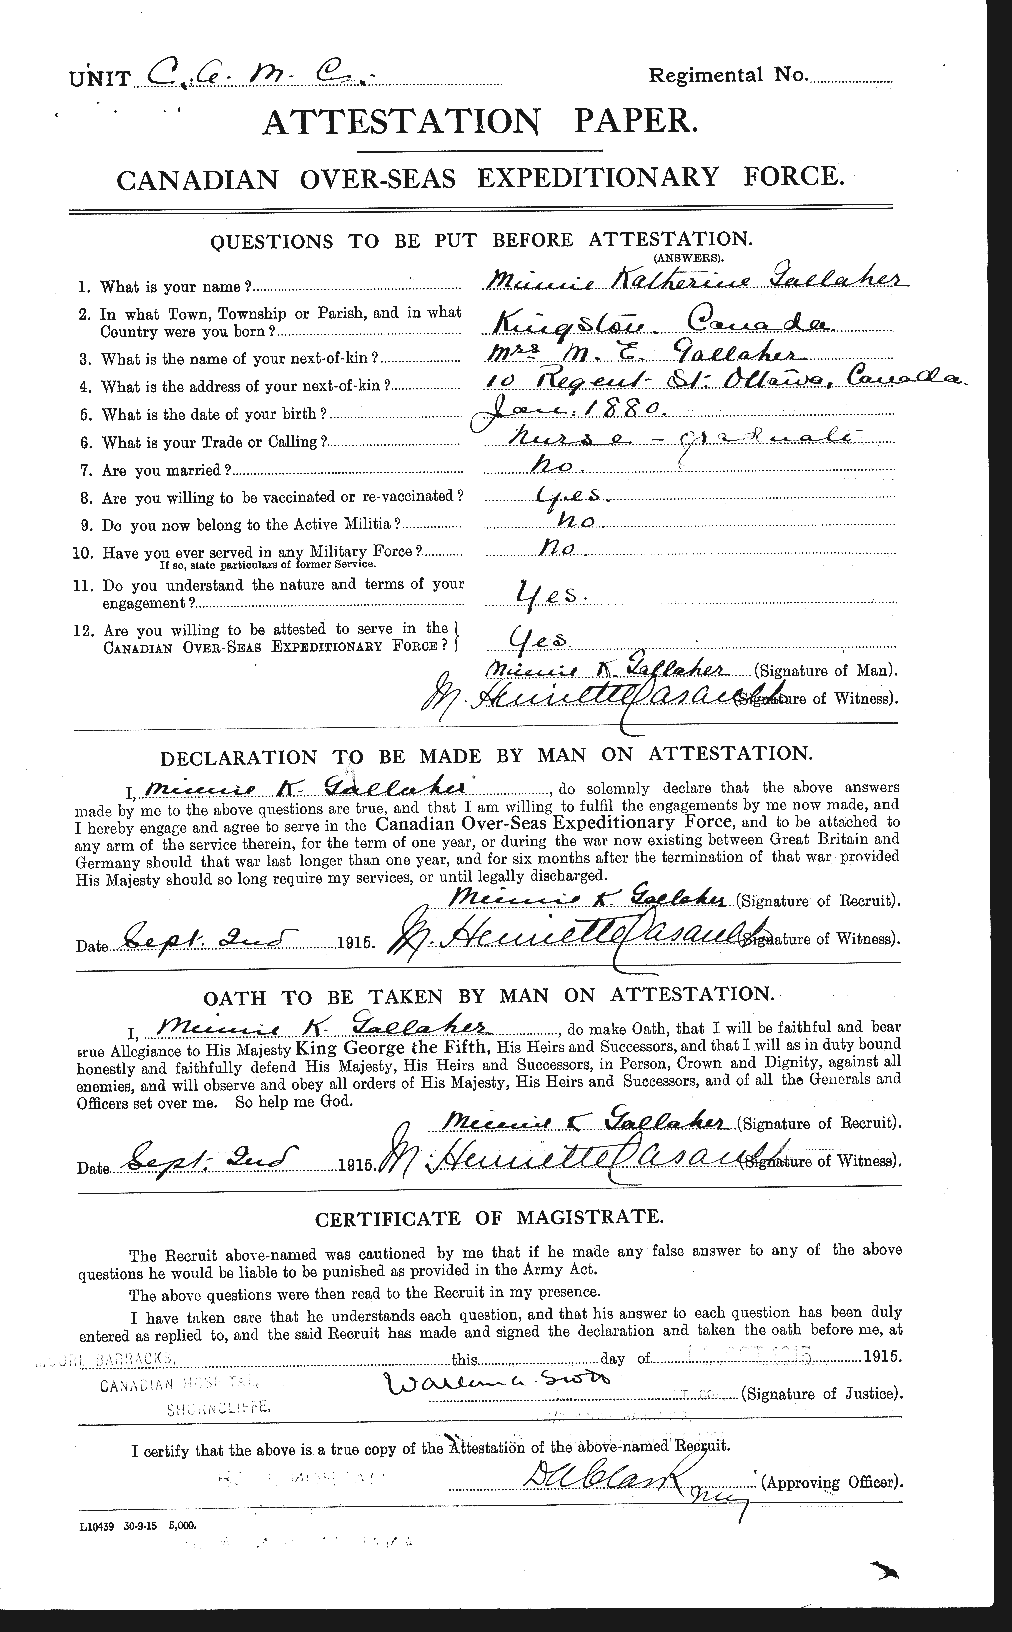 Dossiers du Personnel de la Première Guerre mondiale - CEC 237293a